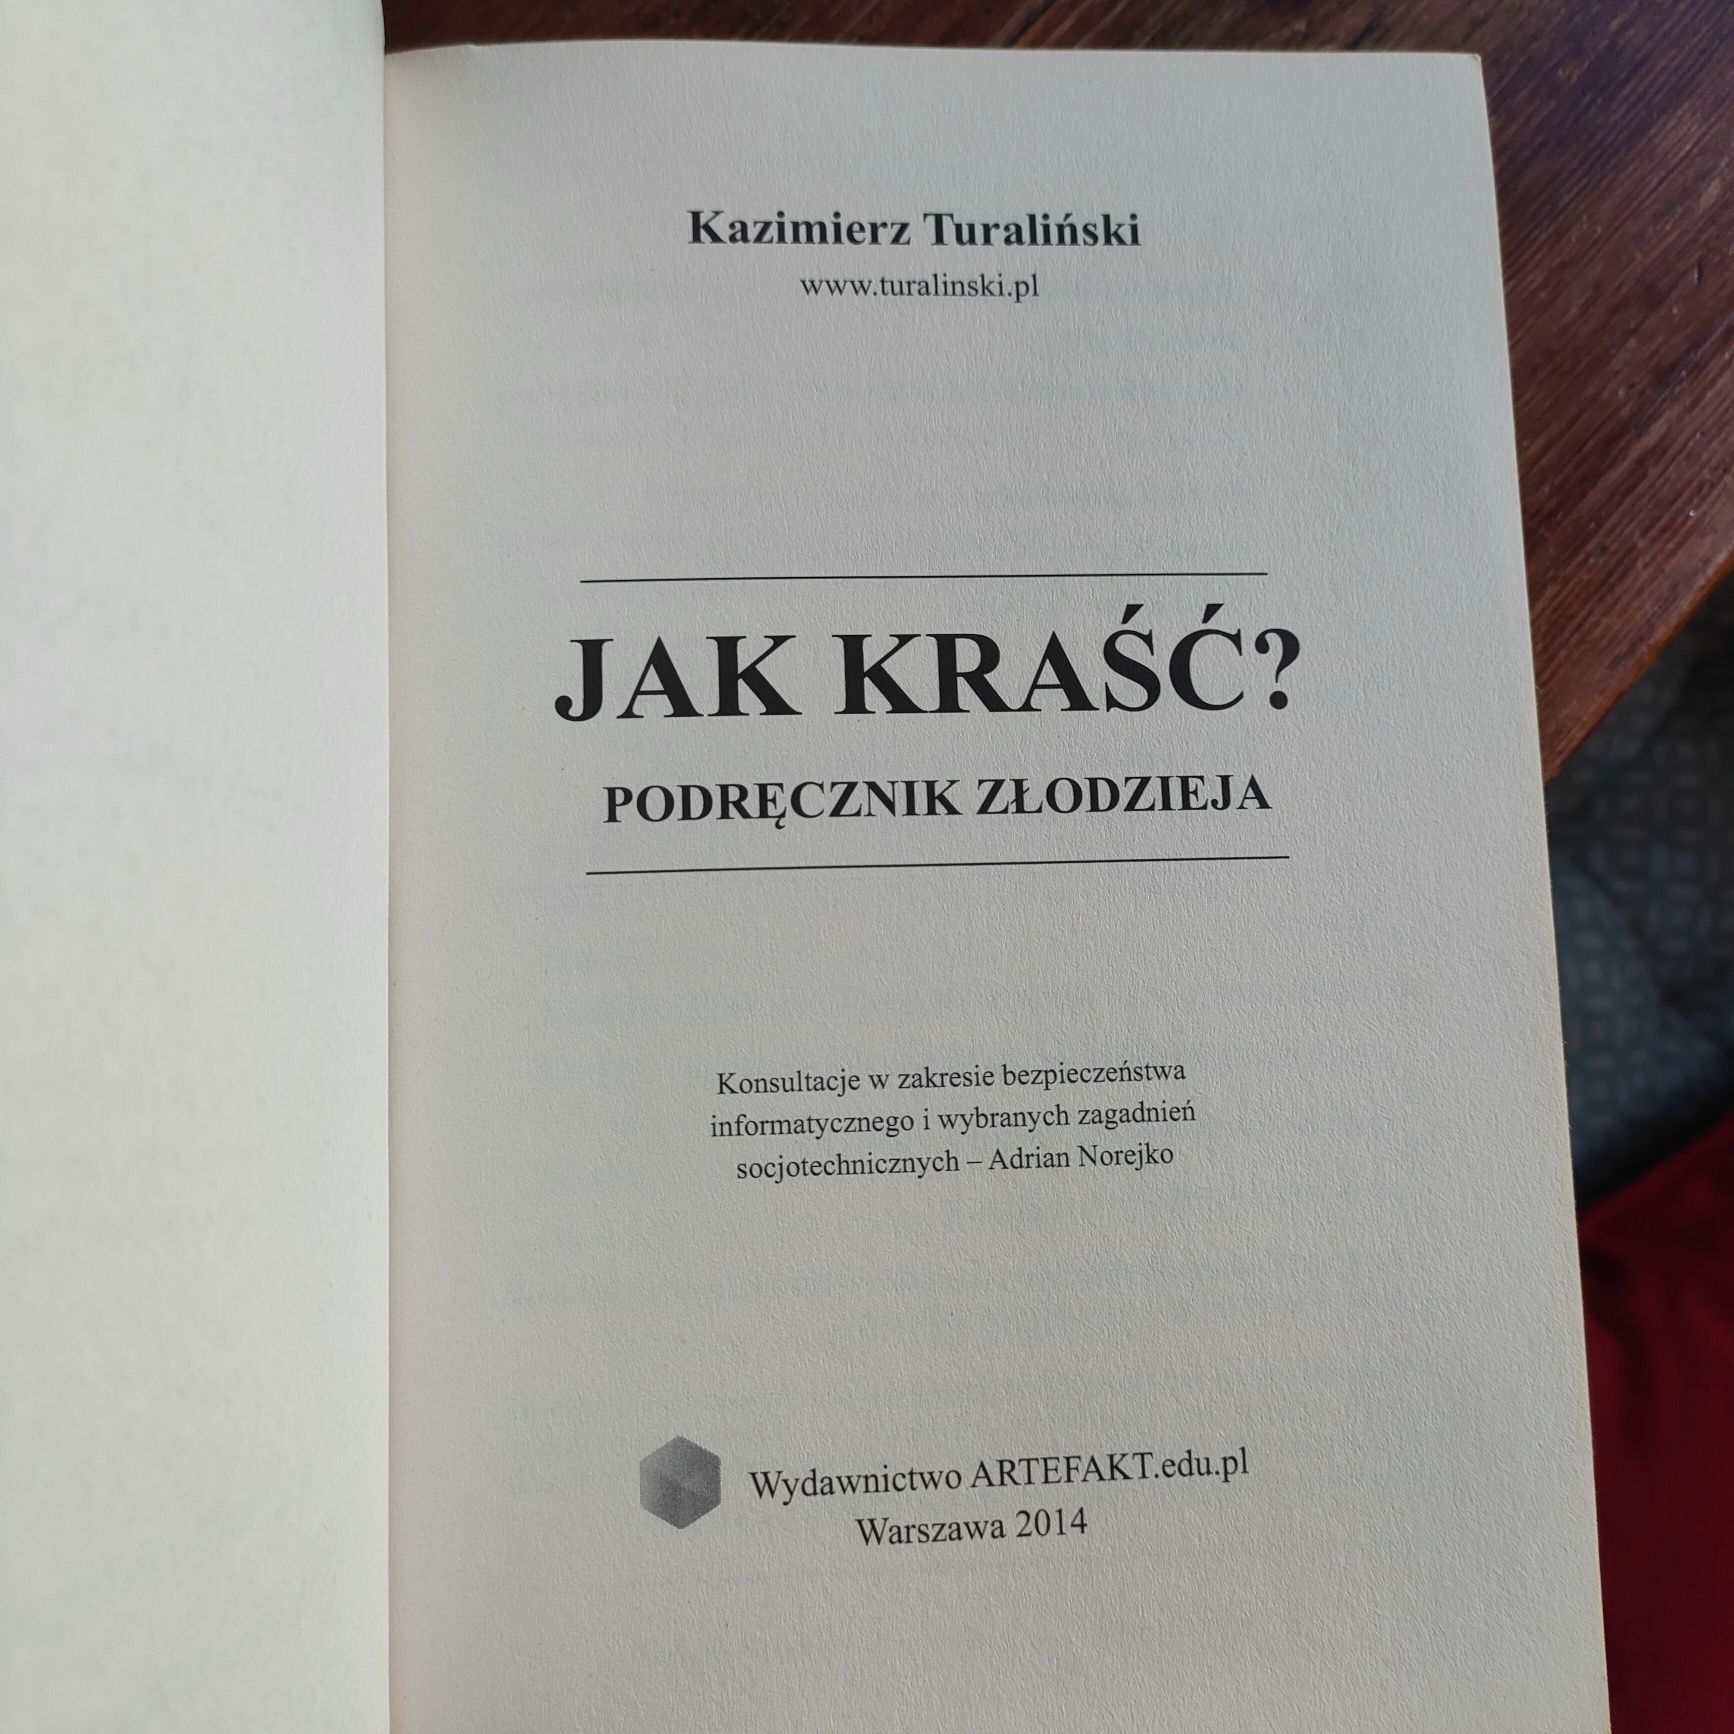 Jak kraść podręcznik złodzieja K.Turaliński Unikat Legnica • OLX.pl